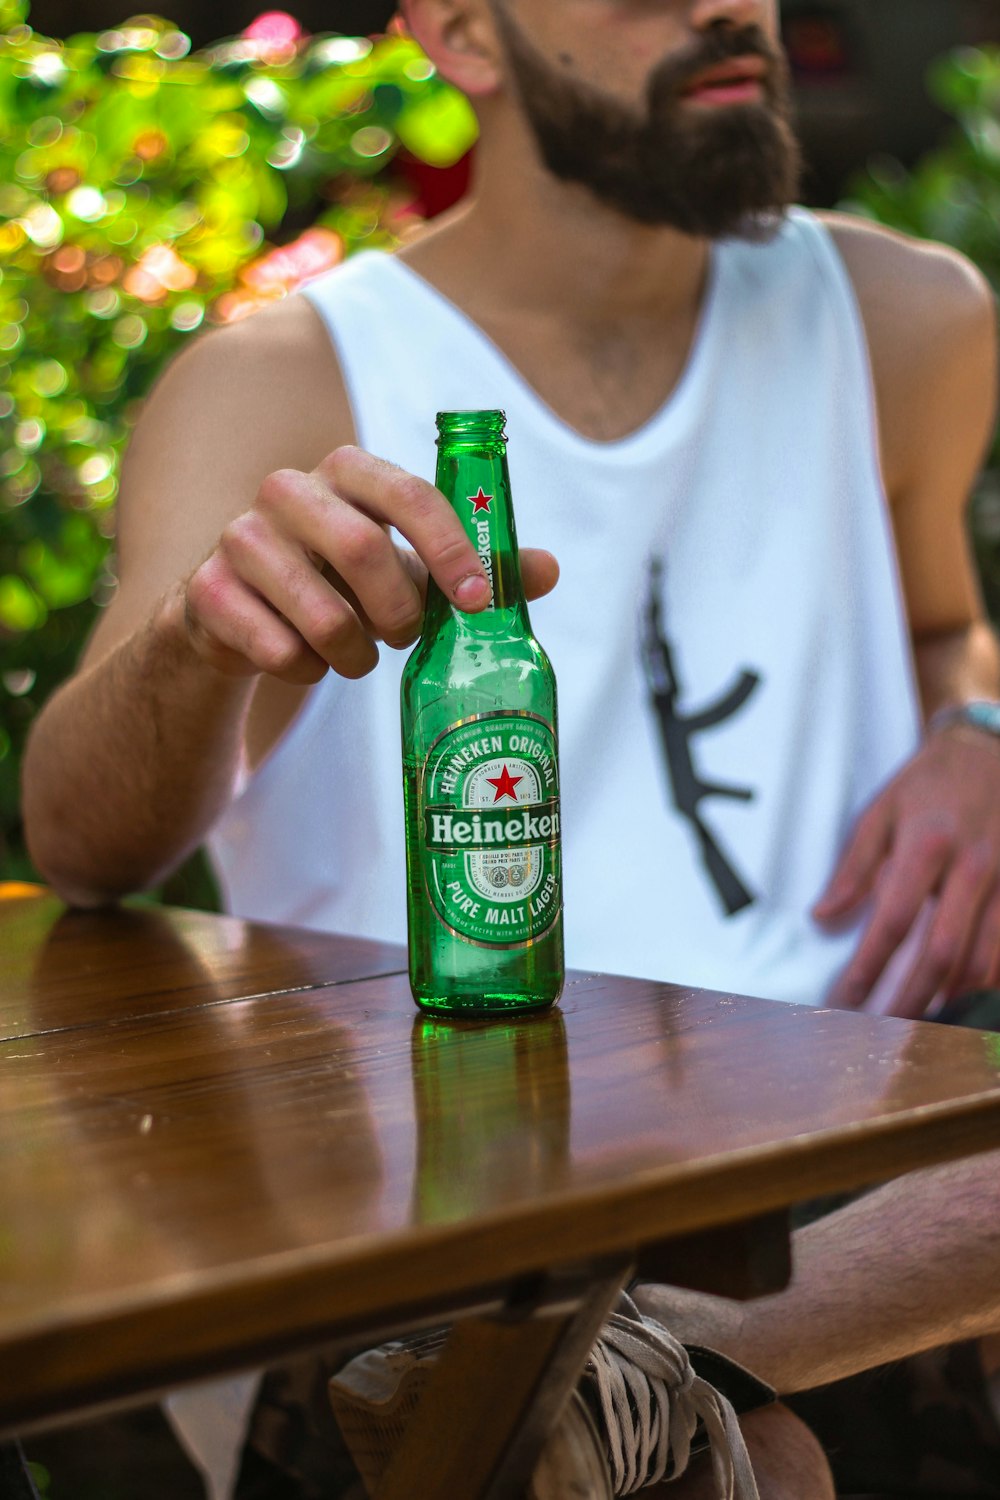 1K+ Imágenes de Heineken | Descargar imágenes gratis en Unsplash